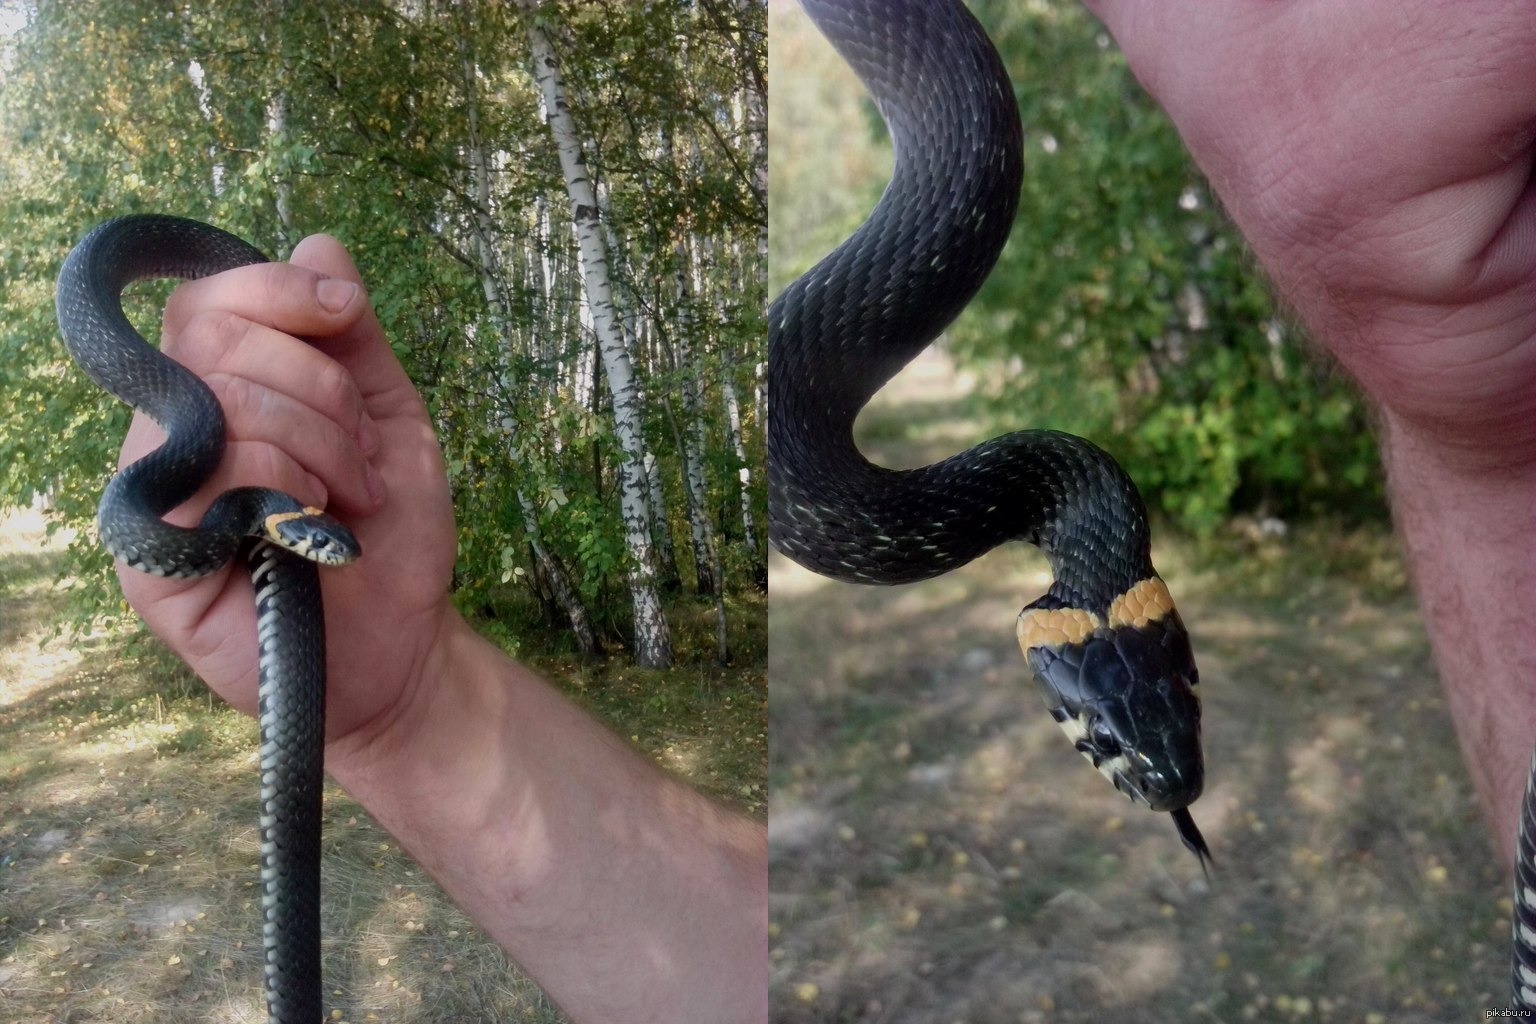 Как отличить ужа от змеи фото